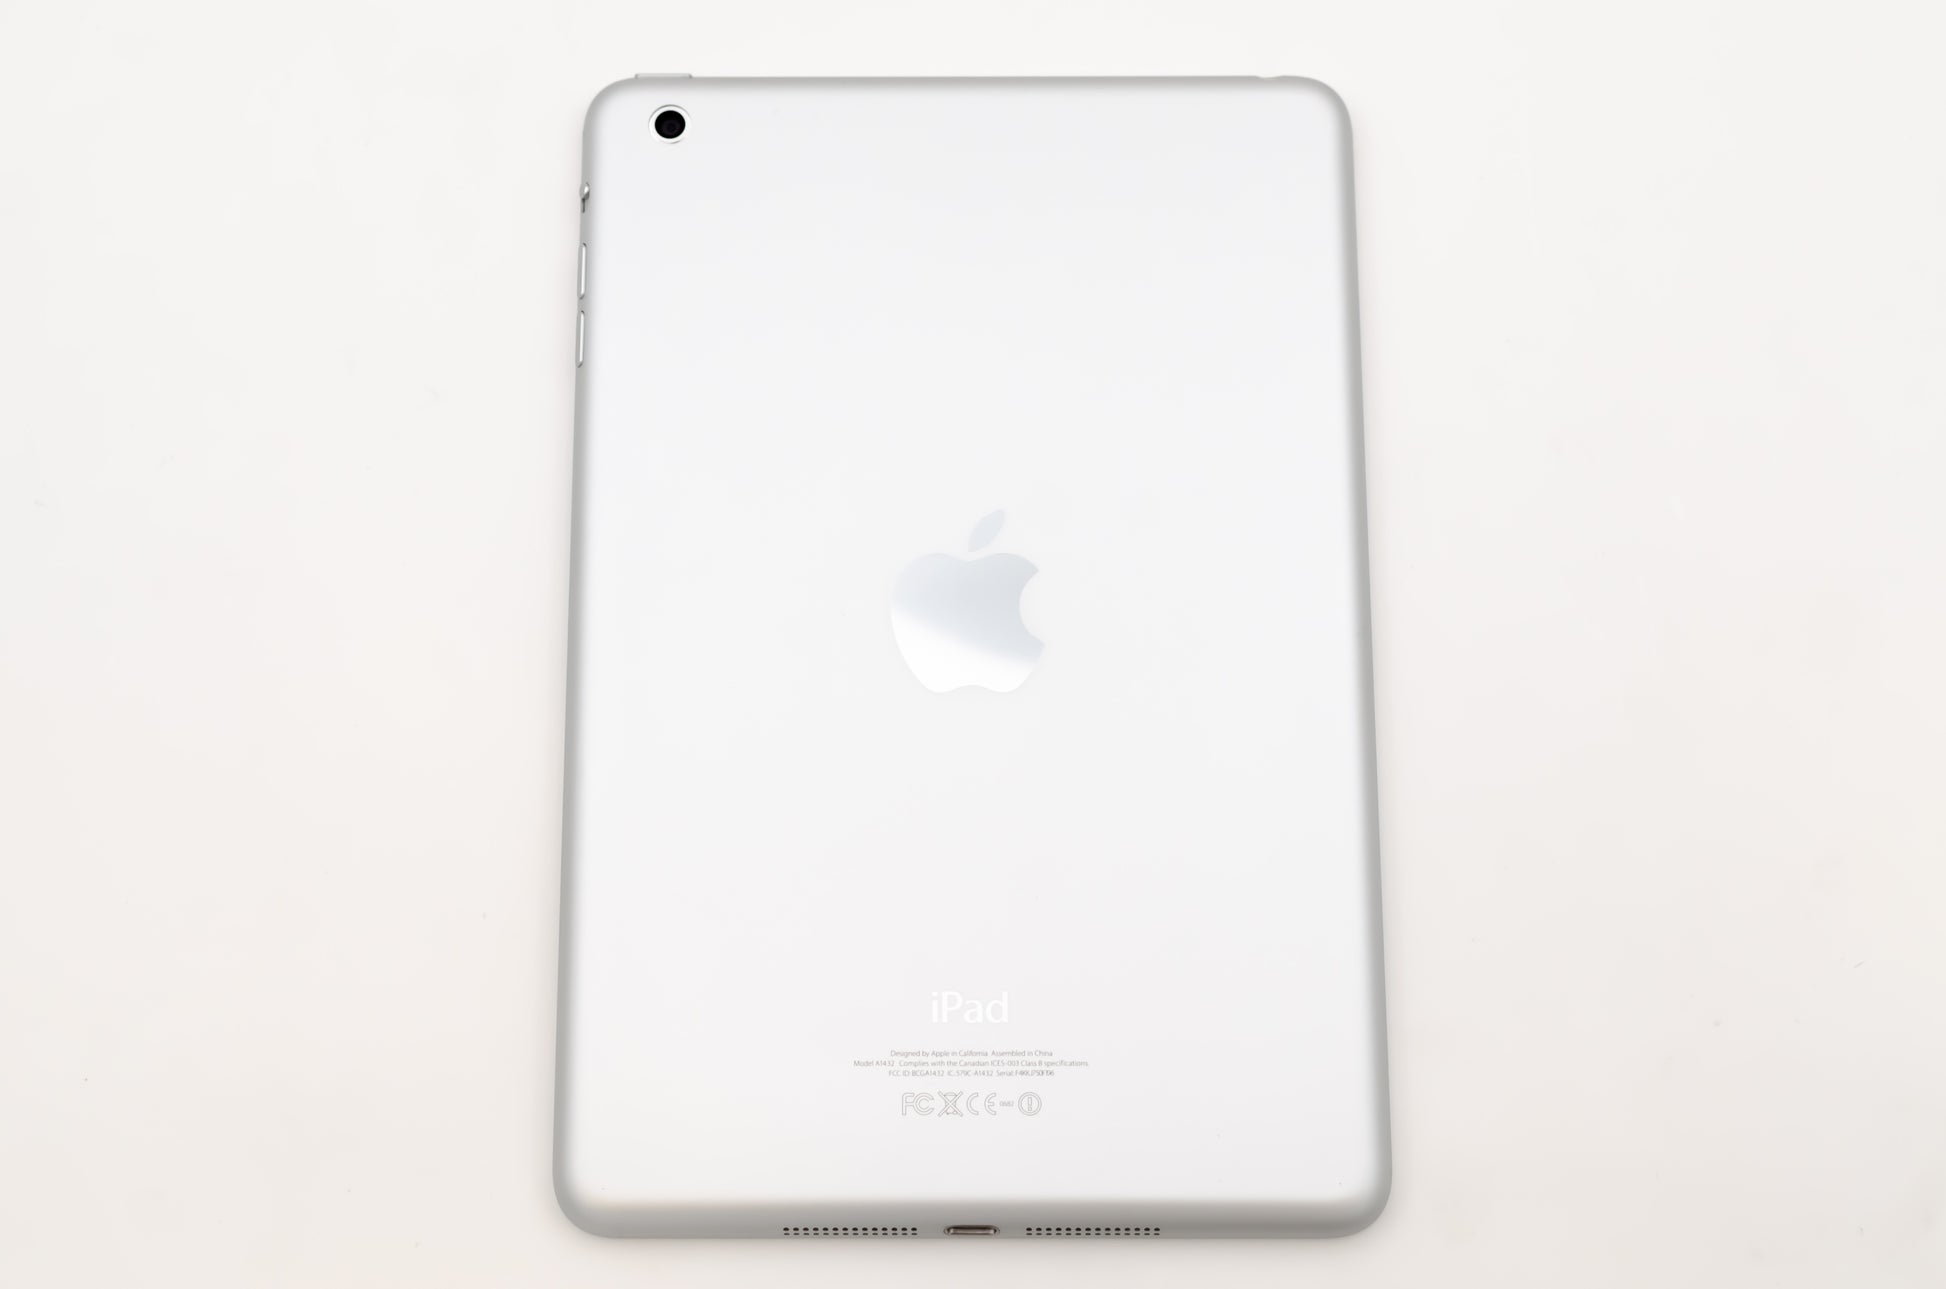 apple-2012-7.9-inch-ipad-mini-1-a1432-silver/white-2